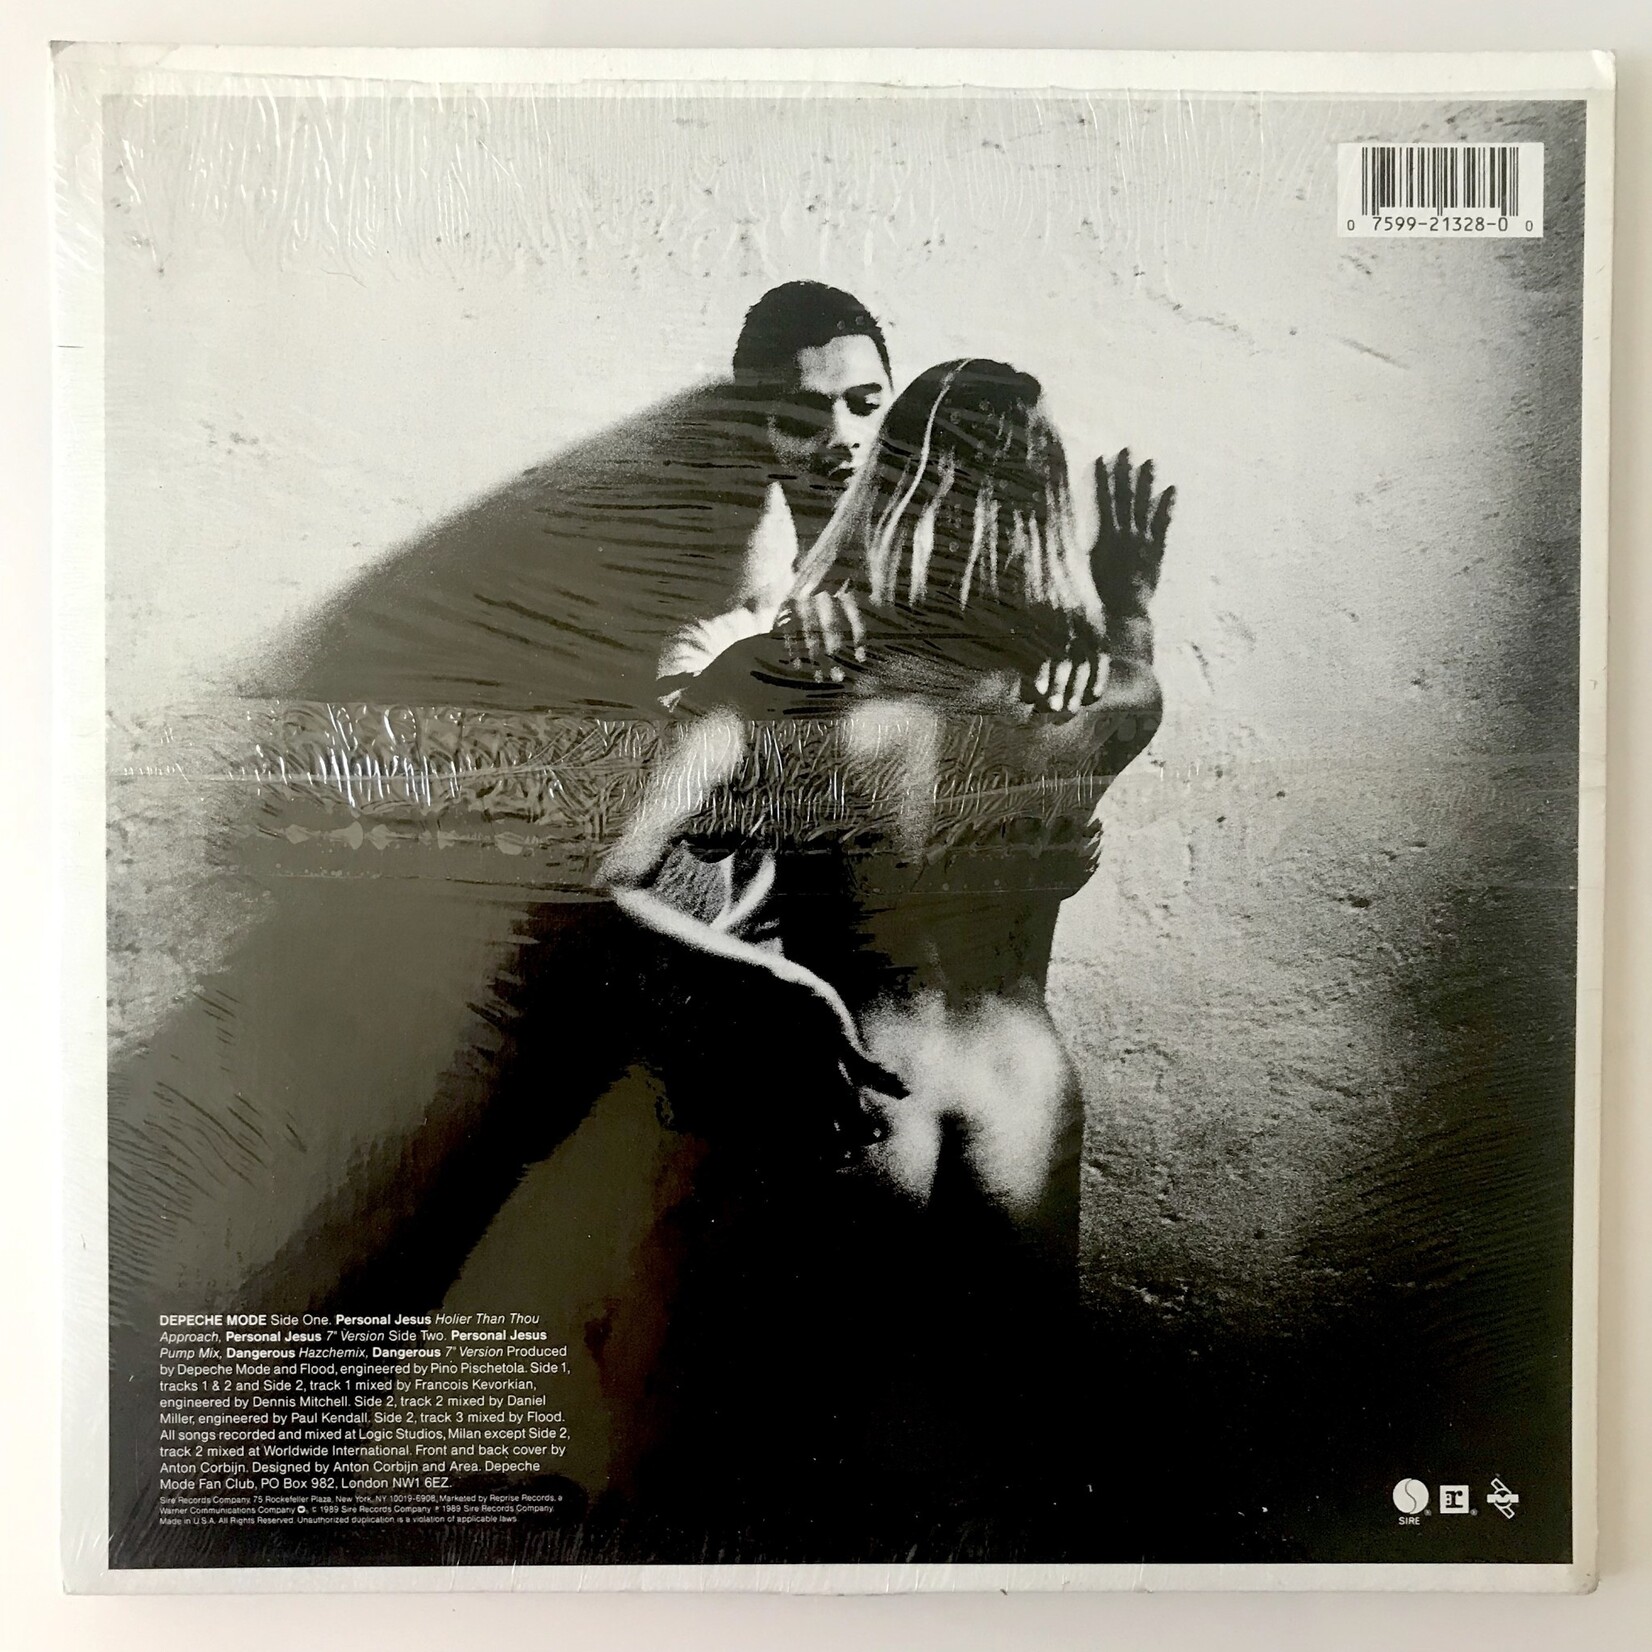 Depeche Mode - Personal Jesus / Dangerous - Vinyl 12-Inch Single (USED)